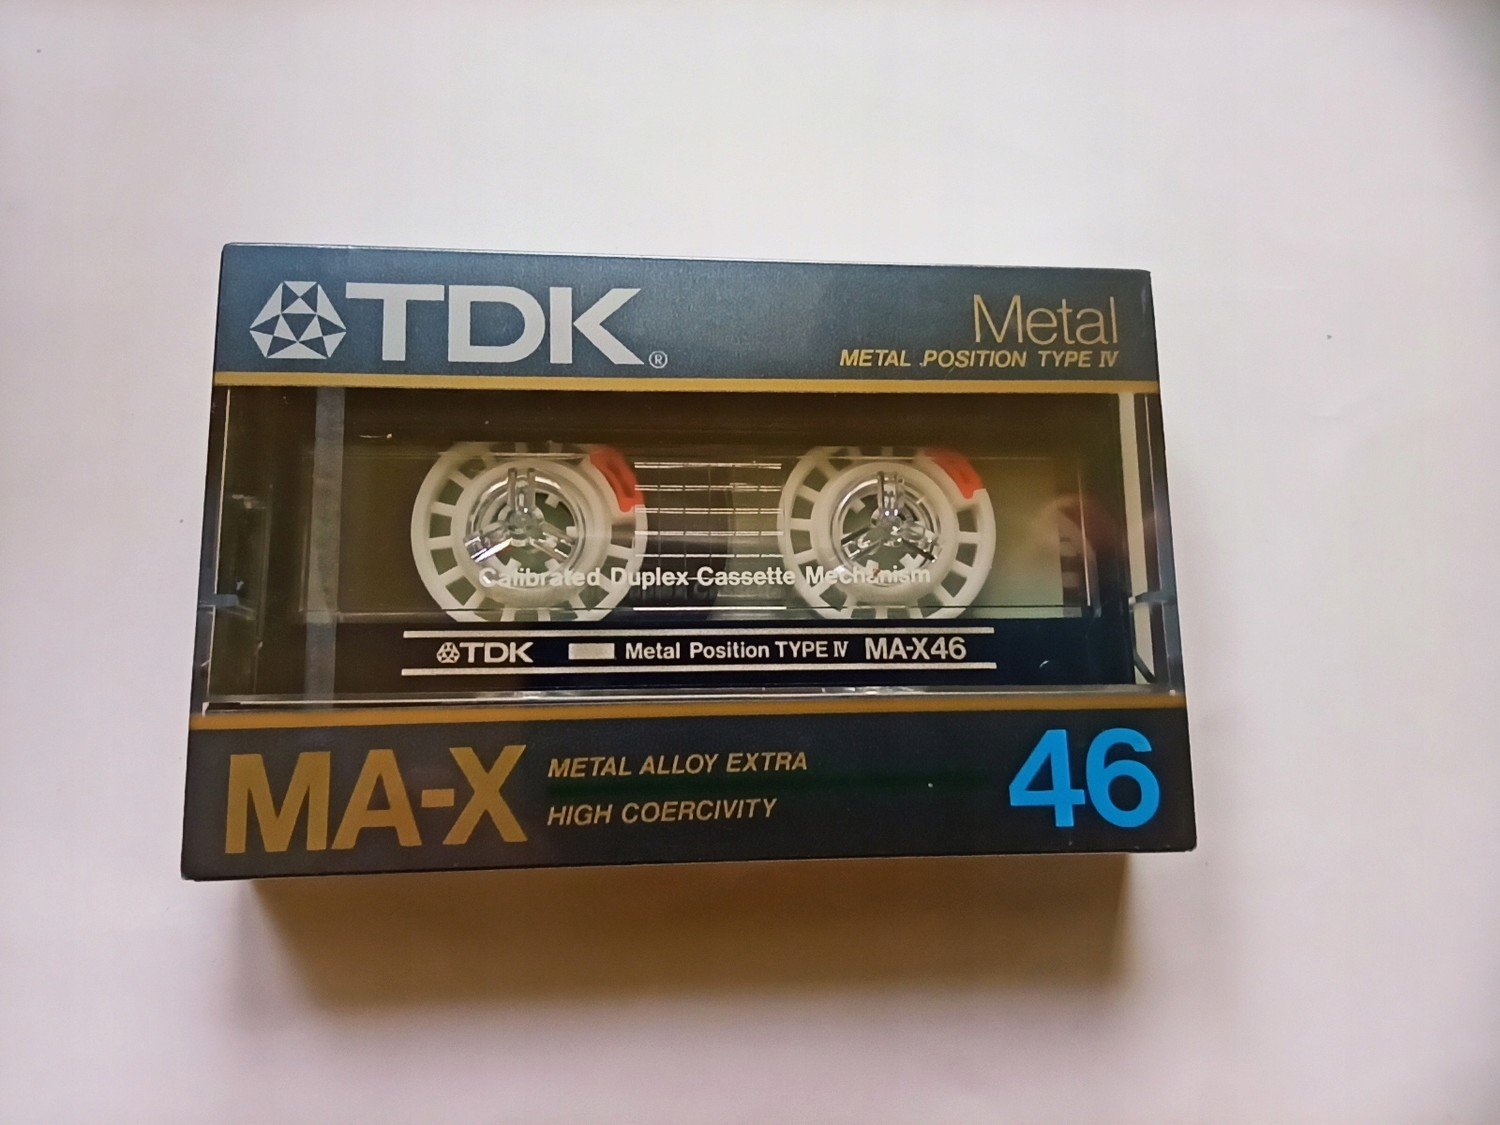 Tdk Ma-x 46 1986. 1ks Japonsko 1ks